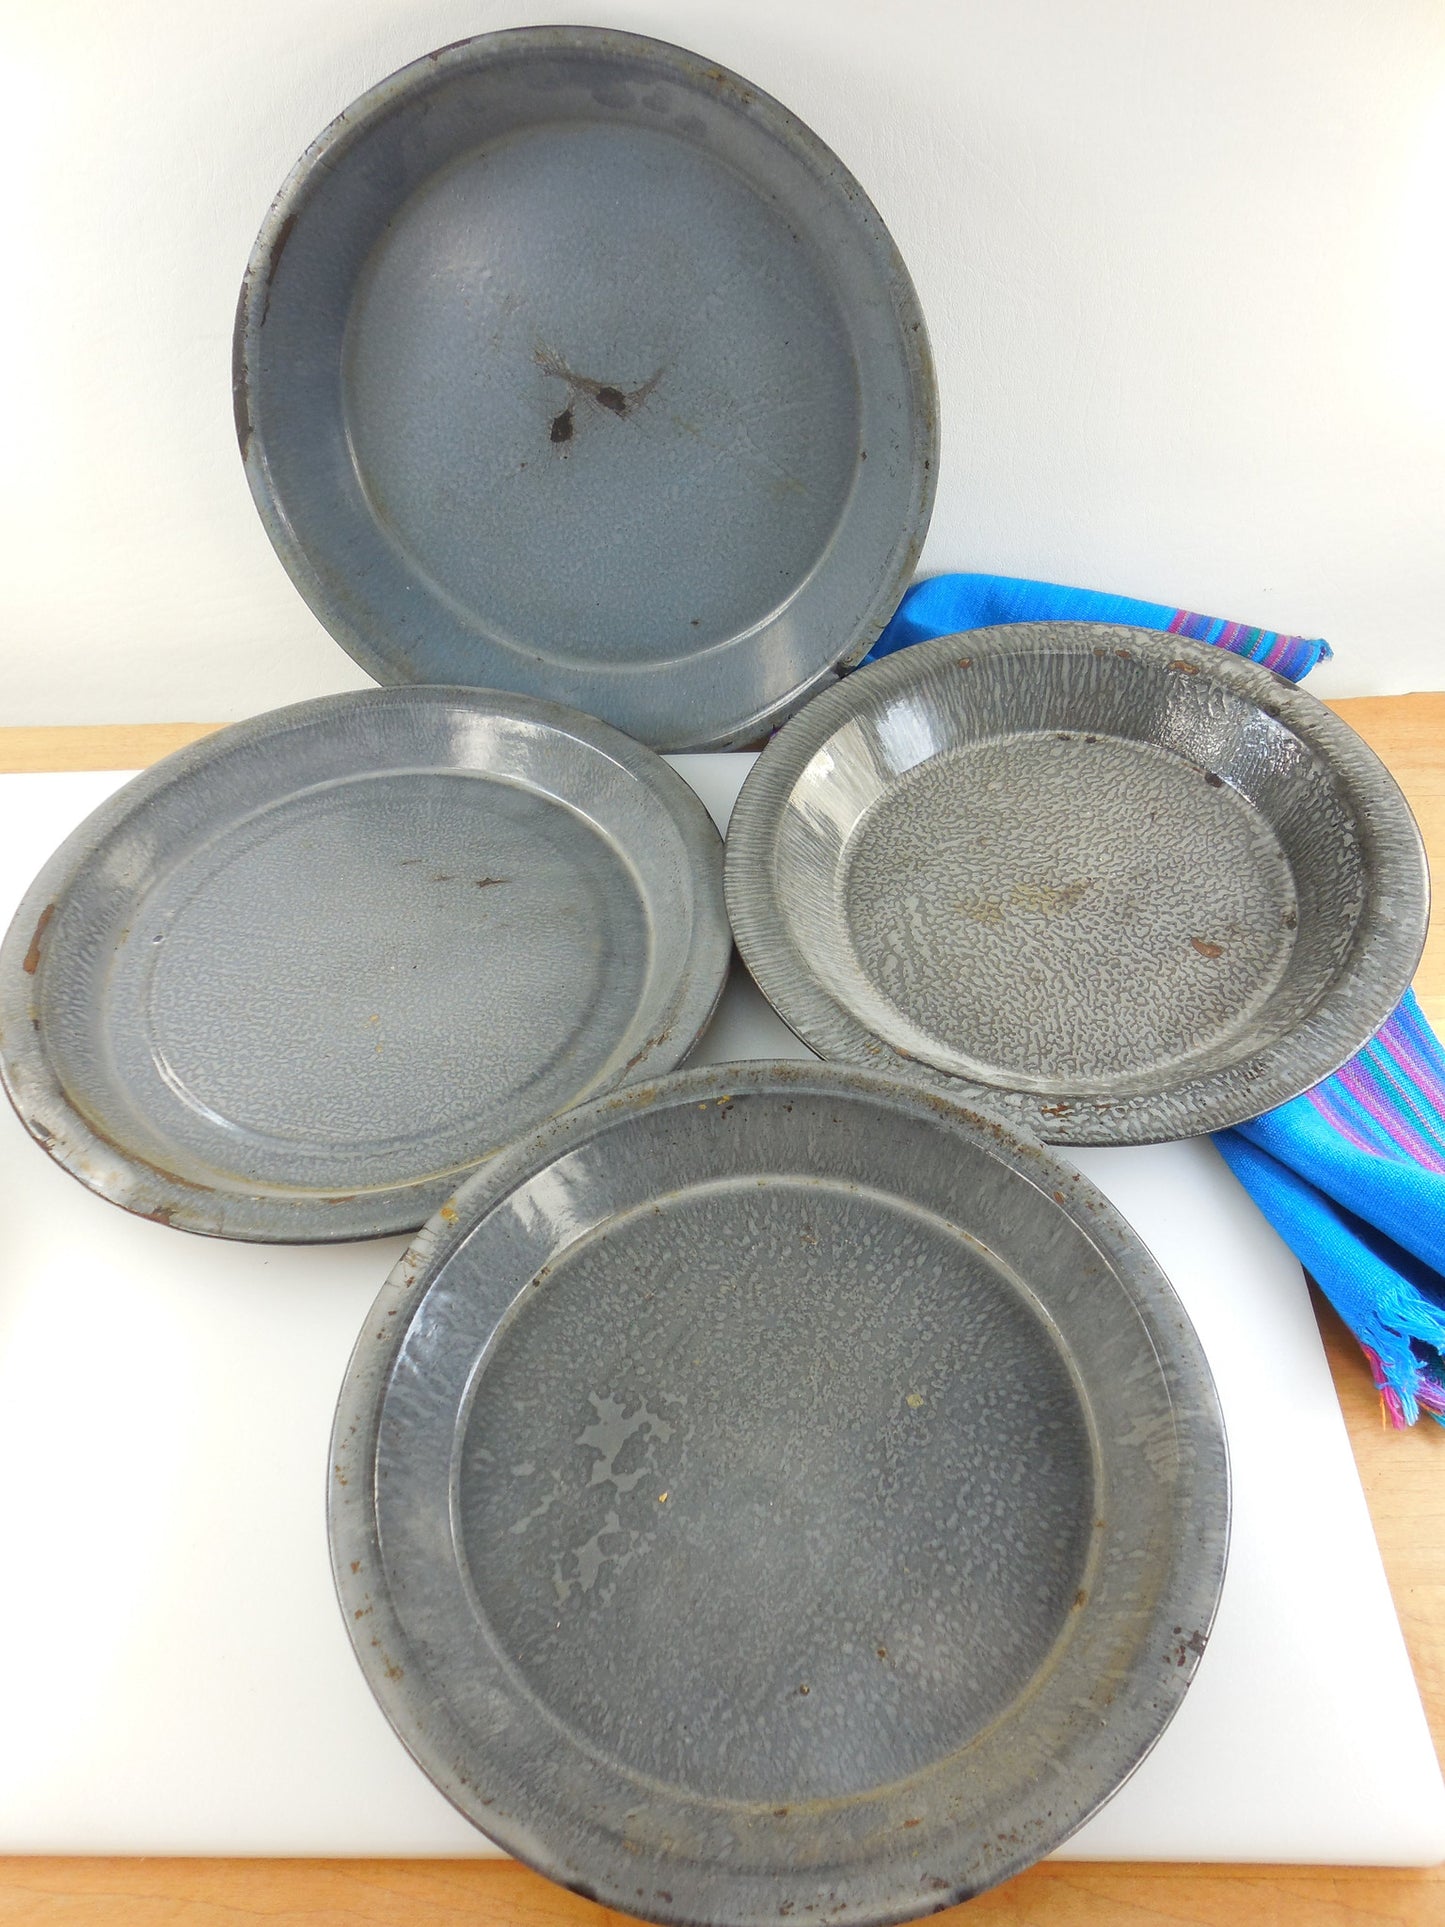 Old Grey Graniteware Pie 4 Plates - Vintage Enamelware Tins Cookware top view